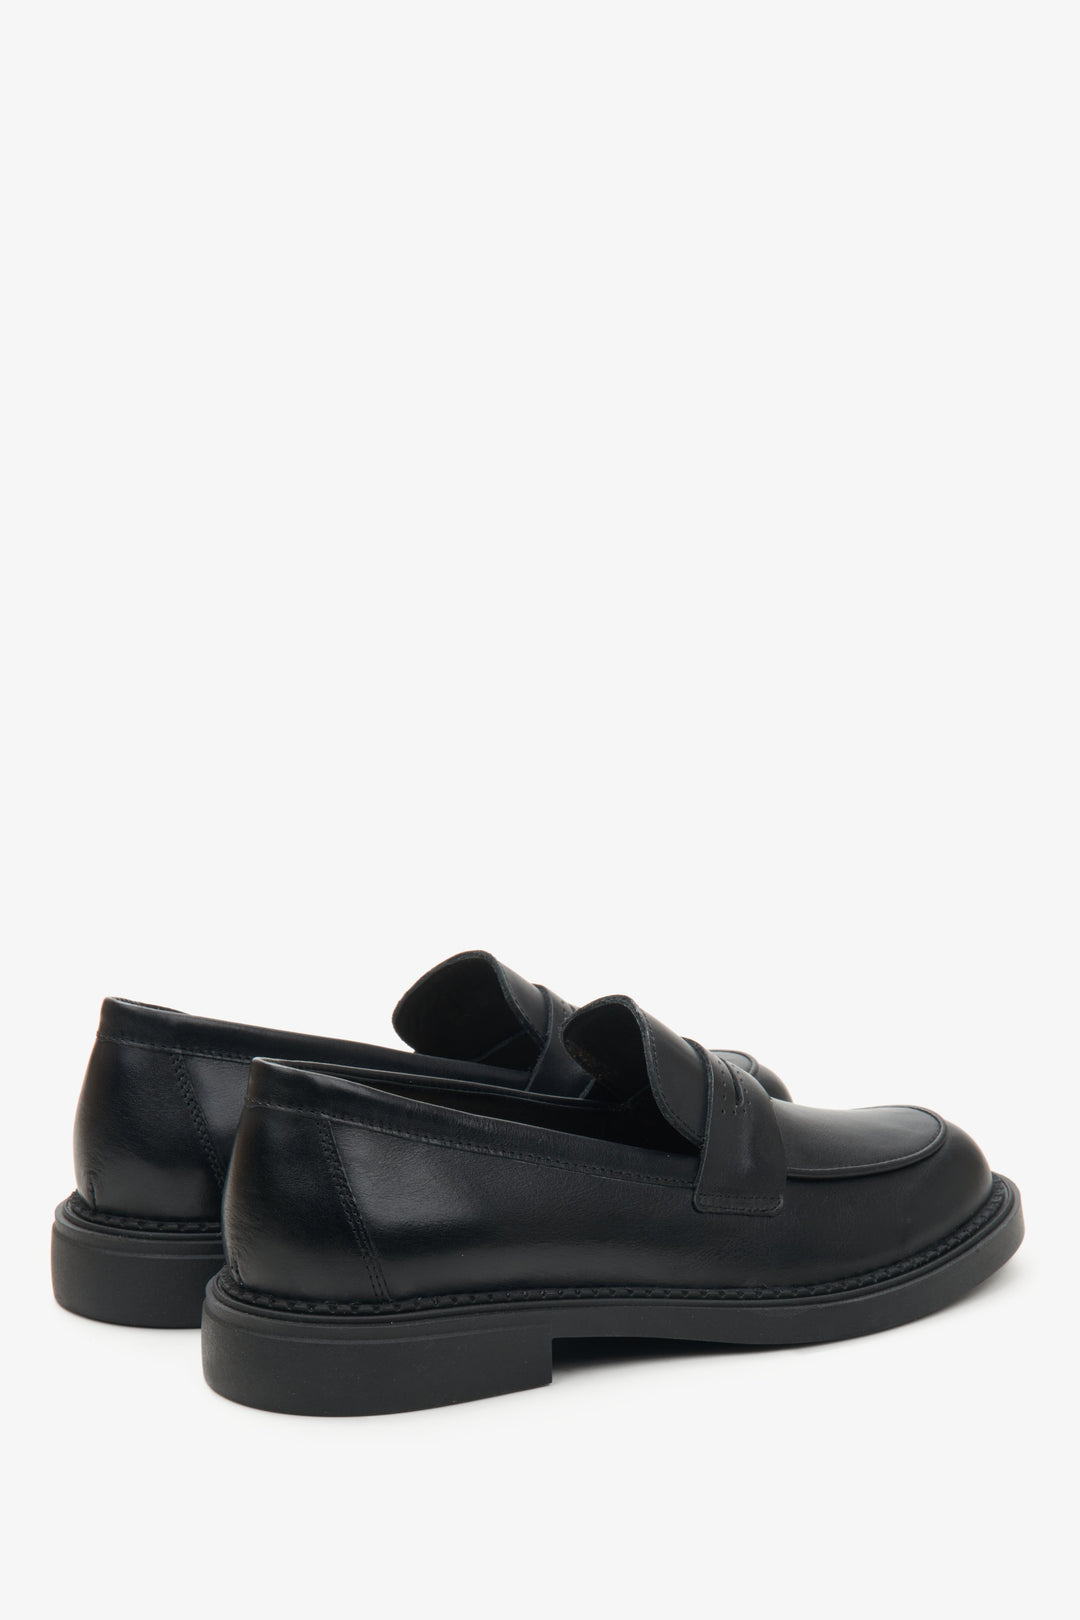 Damskie czarne mokasyny z włoskiej skóry naturalnej Estro - zbliżenie na zapiętek i linię boczną butów.